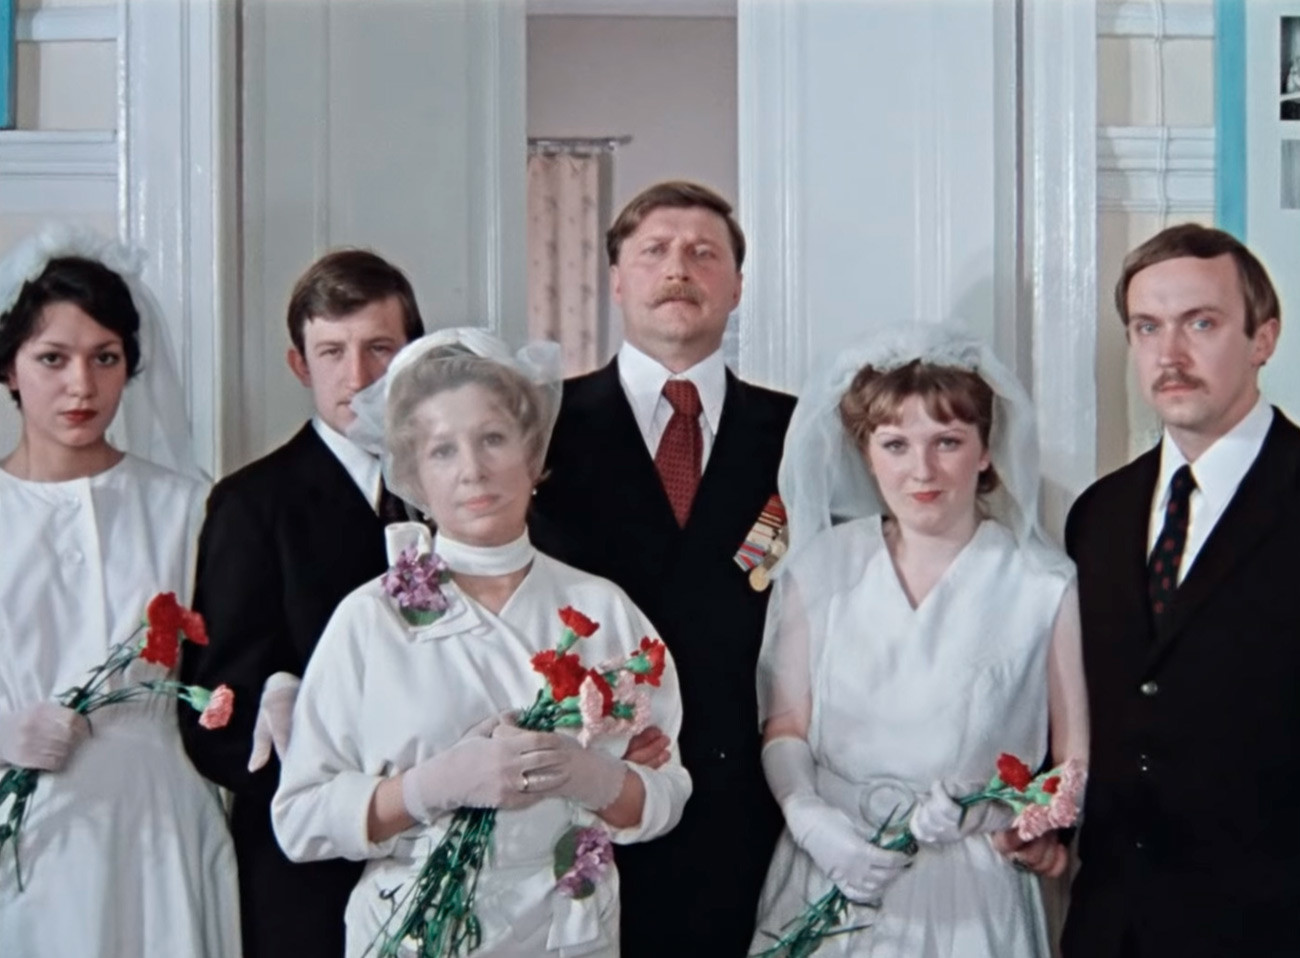 Escena de la boda de la película La Puerta de Pokrovski de Mijaíl Kazakov, 1983